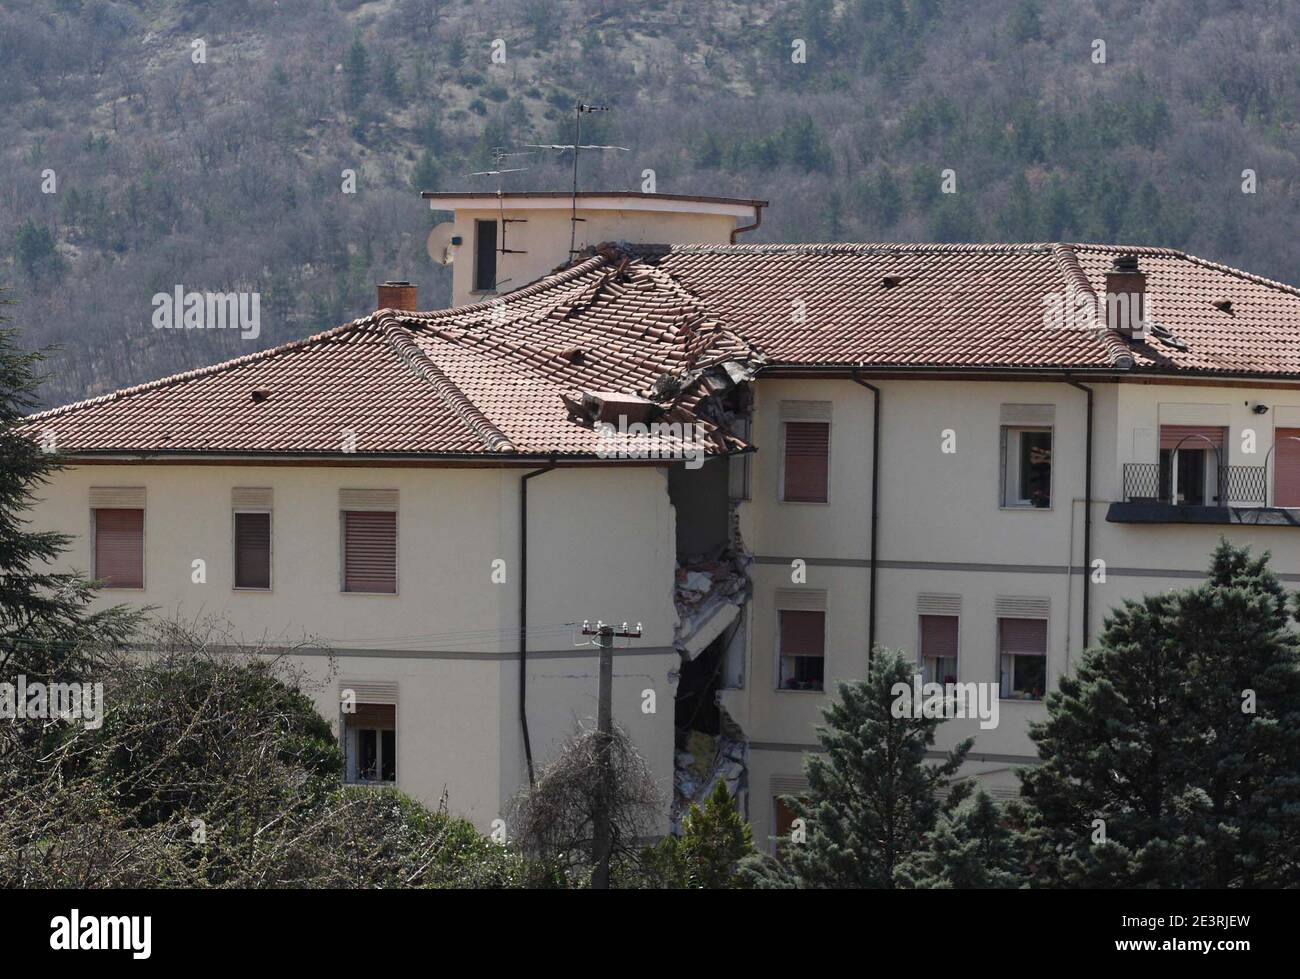 L'Aquila, Italia - 6 aprile 2009: Terremoto, le lesioni di un'abitazione a L'Aquila Stock Photo